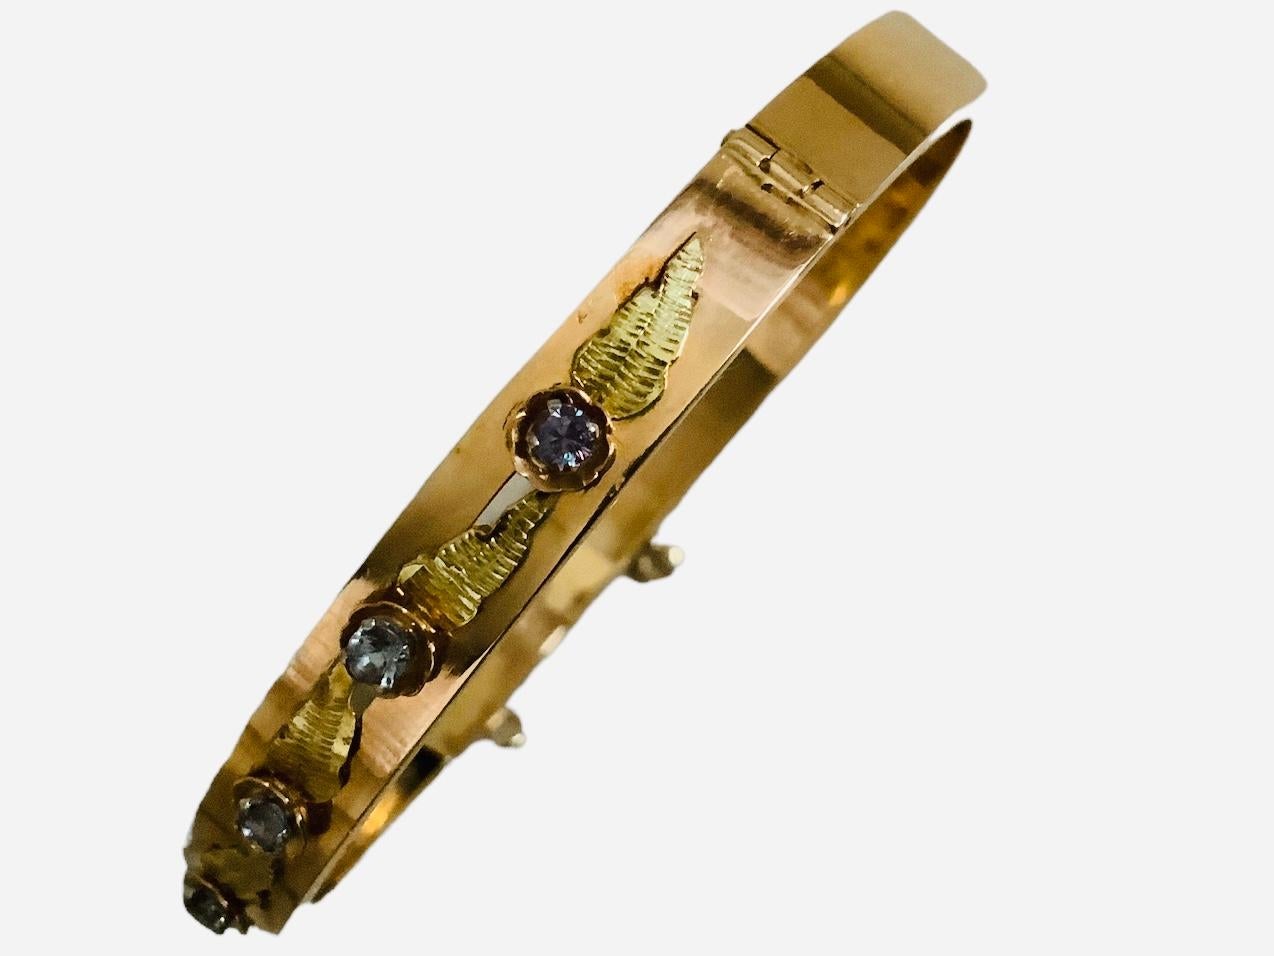 Il s'agit d'un bracelet à charnière en or rose/jaune 18K en alexandrite. Il contient sept alexandrites rondes de taille brillant, chacune mesurant 2,69 mm et pesant 0,63 carats. Elles sont alternées avec de longues feuilles d'or jaune. Chacune